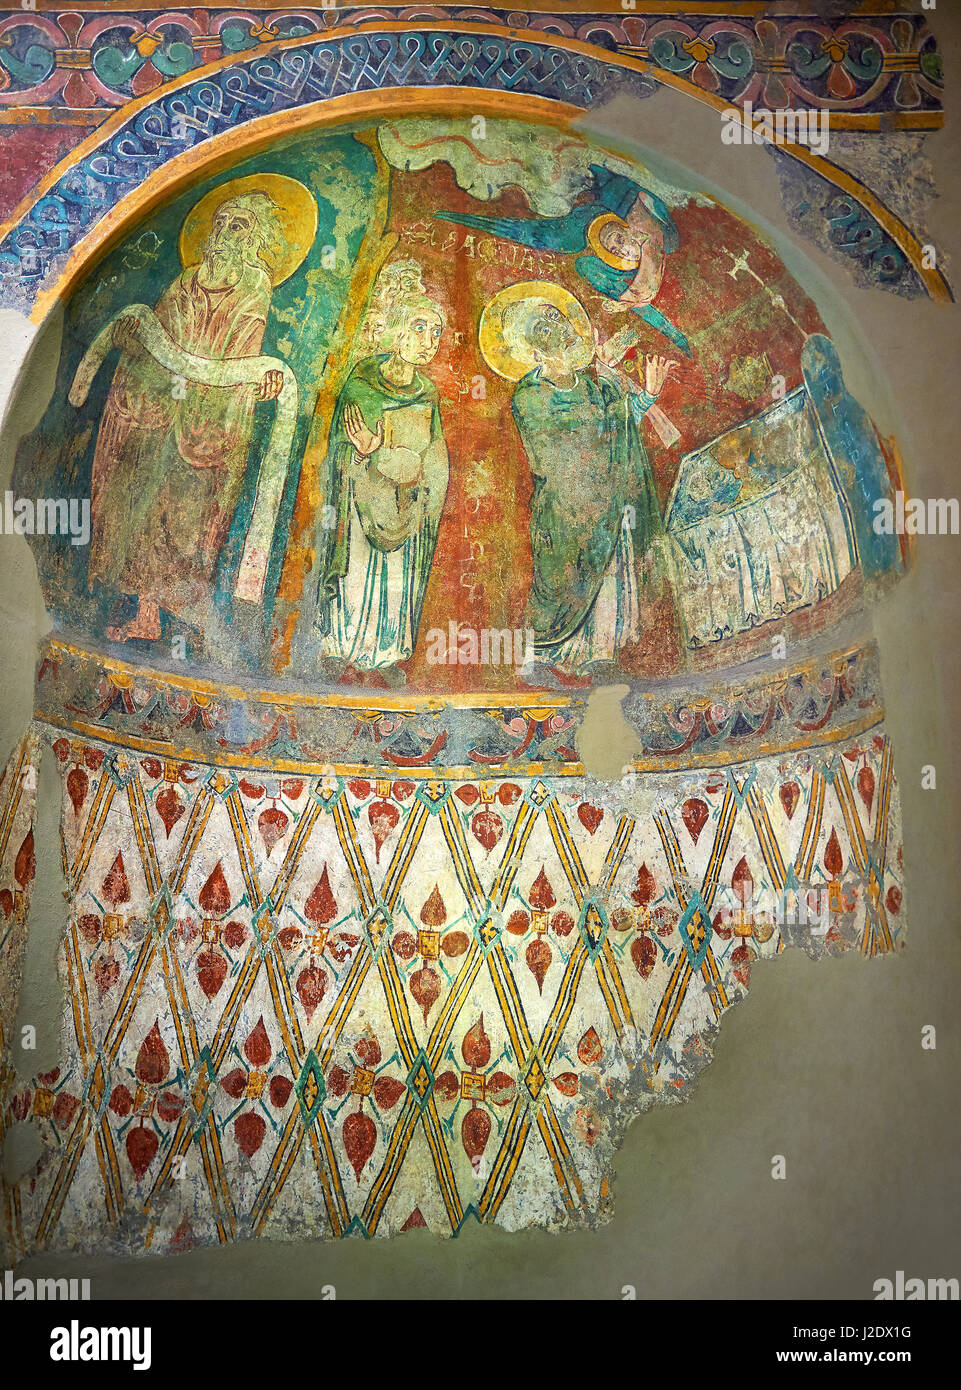 Romanische Fresken in der Apsis von St. Steven von Andorra (Sant Esteve) aus der Kirche von Sant Esteve bekannte, gemalt um 1200-1210, Andorra la Vel Stockfoto